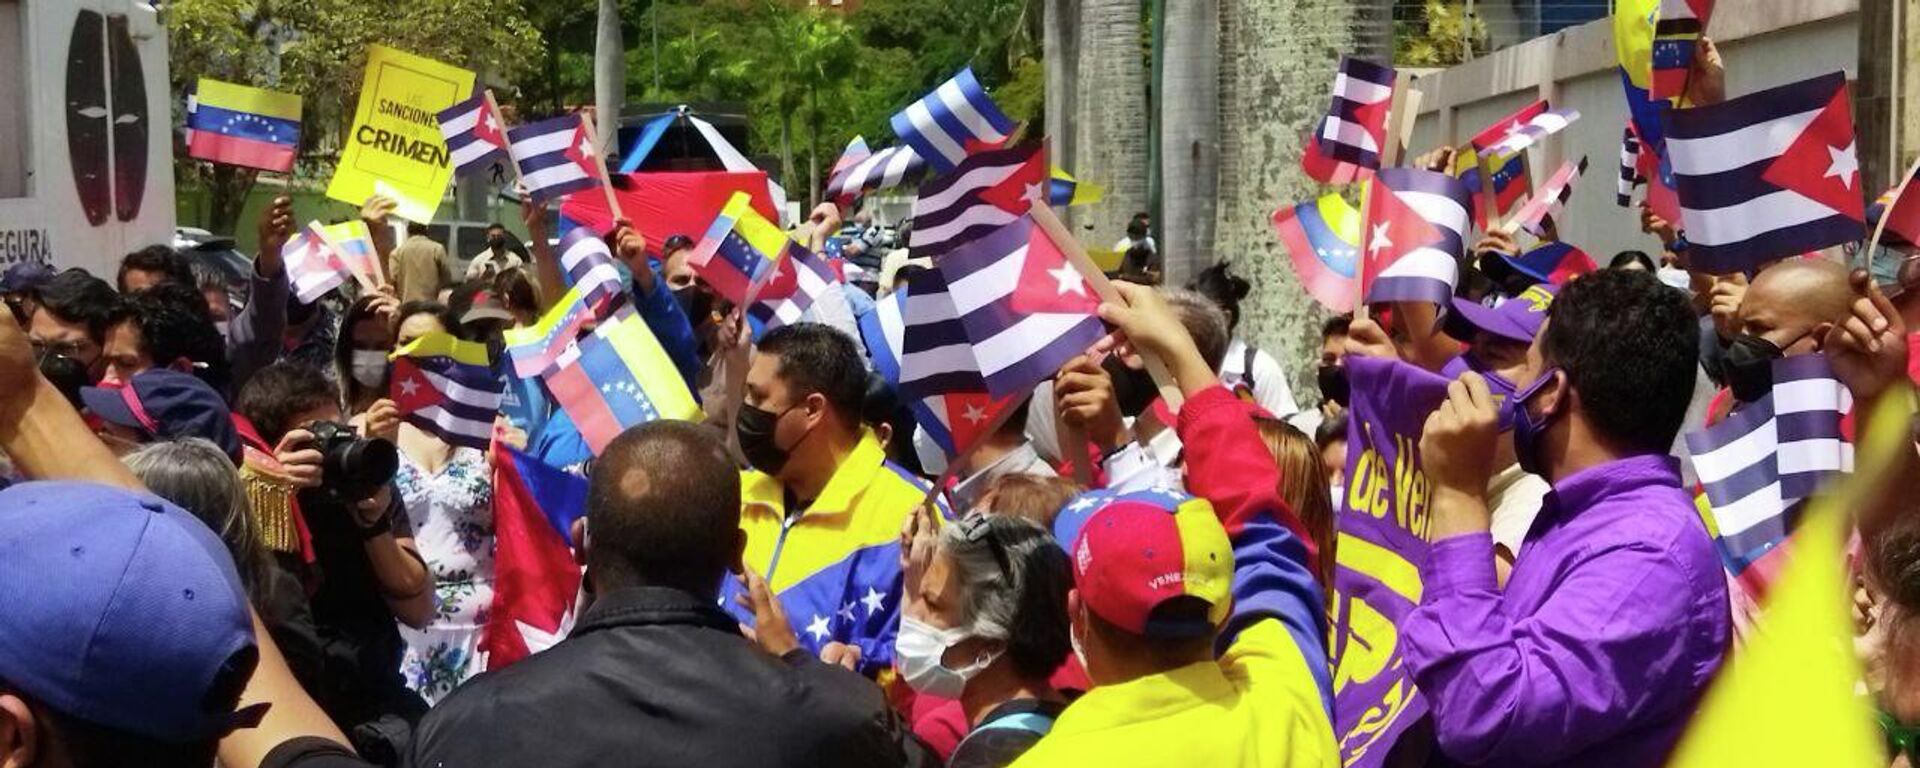 Militantes venezolanos se solidarizan frente a la sede de la embajada de Cuba en Caracas - Sputnik Mundo, 1920, 12.07.2021